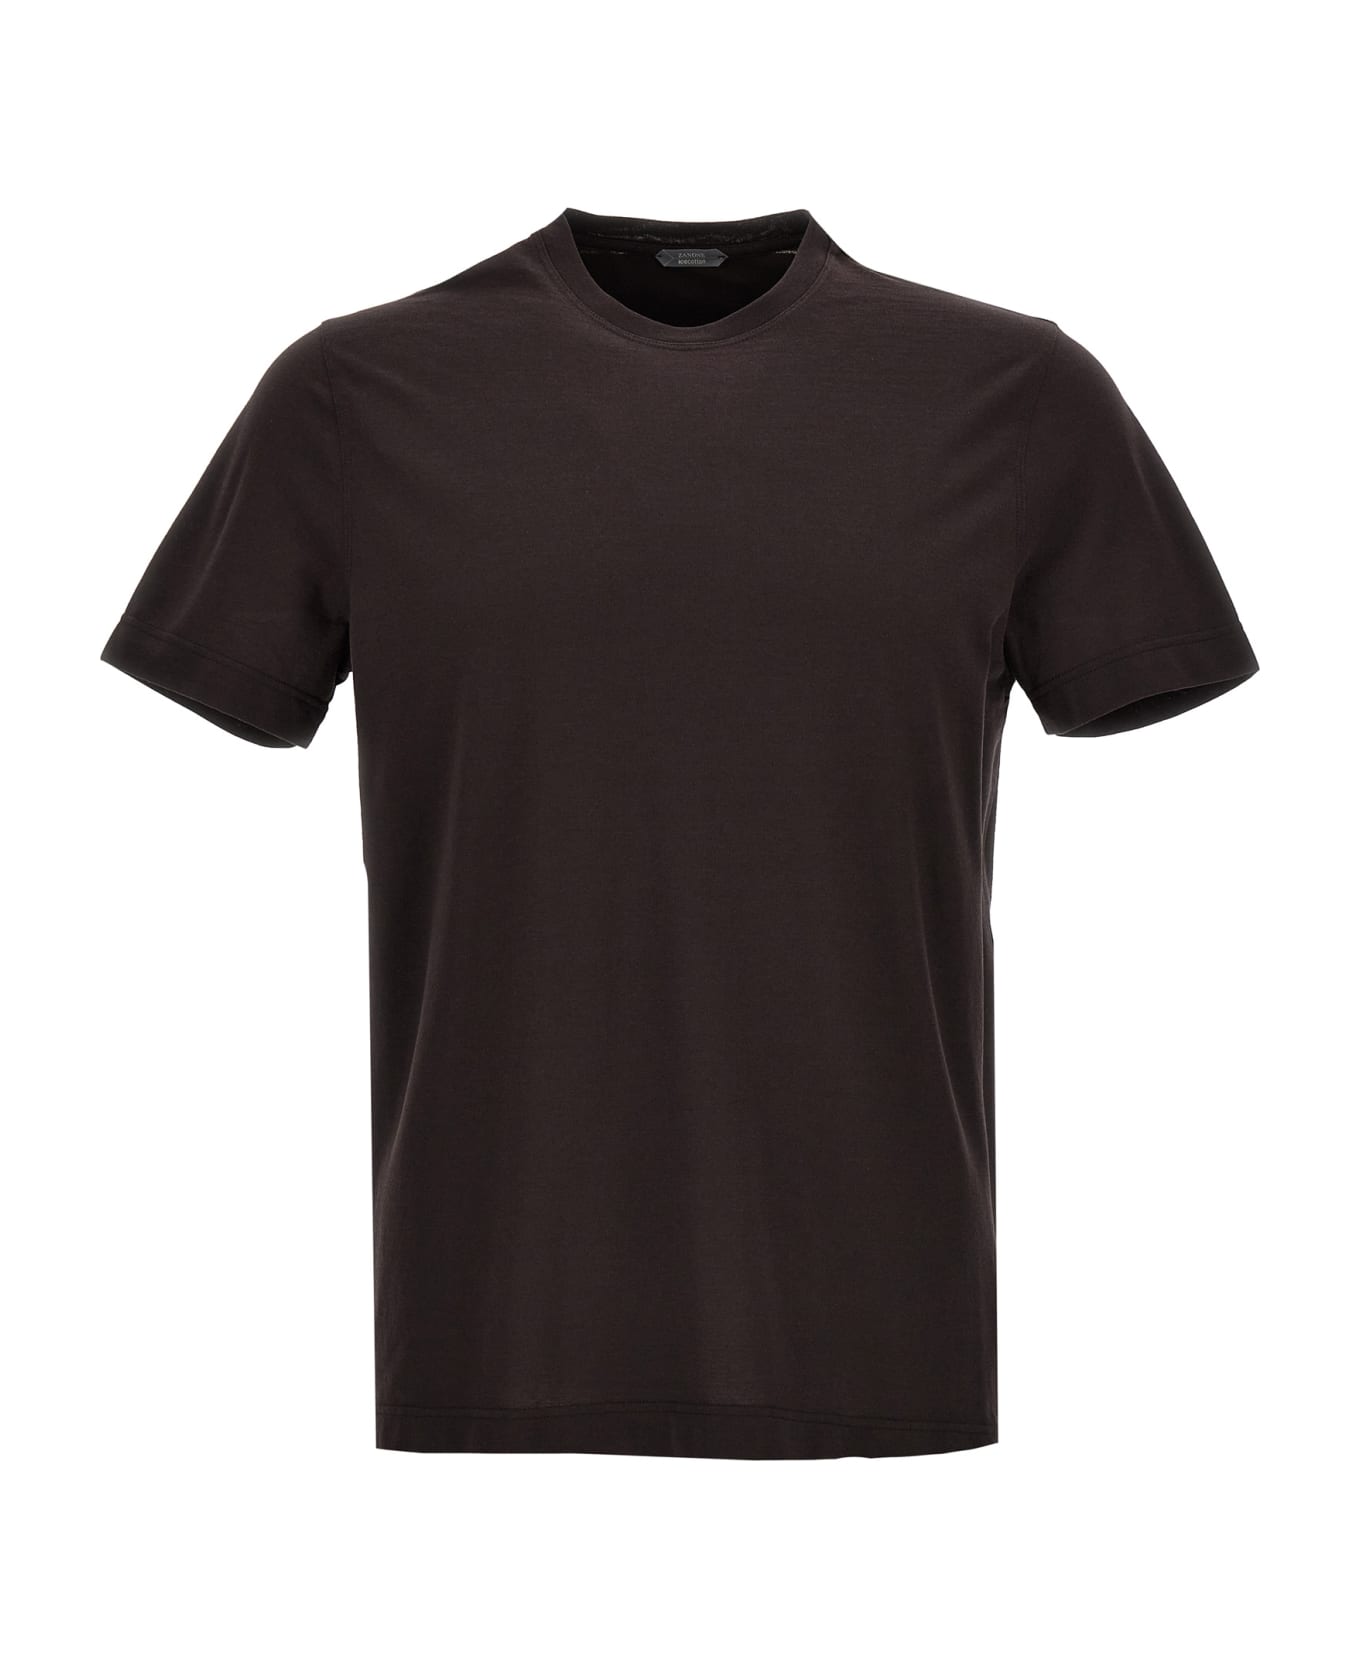 Zanone Ice Cotton T-shirt - Brown